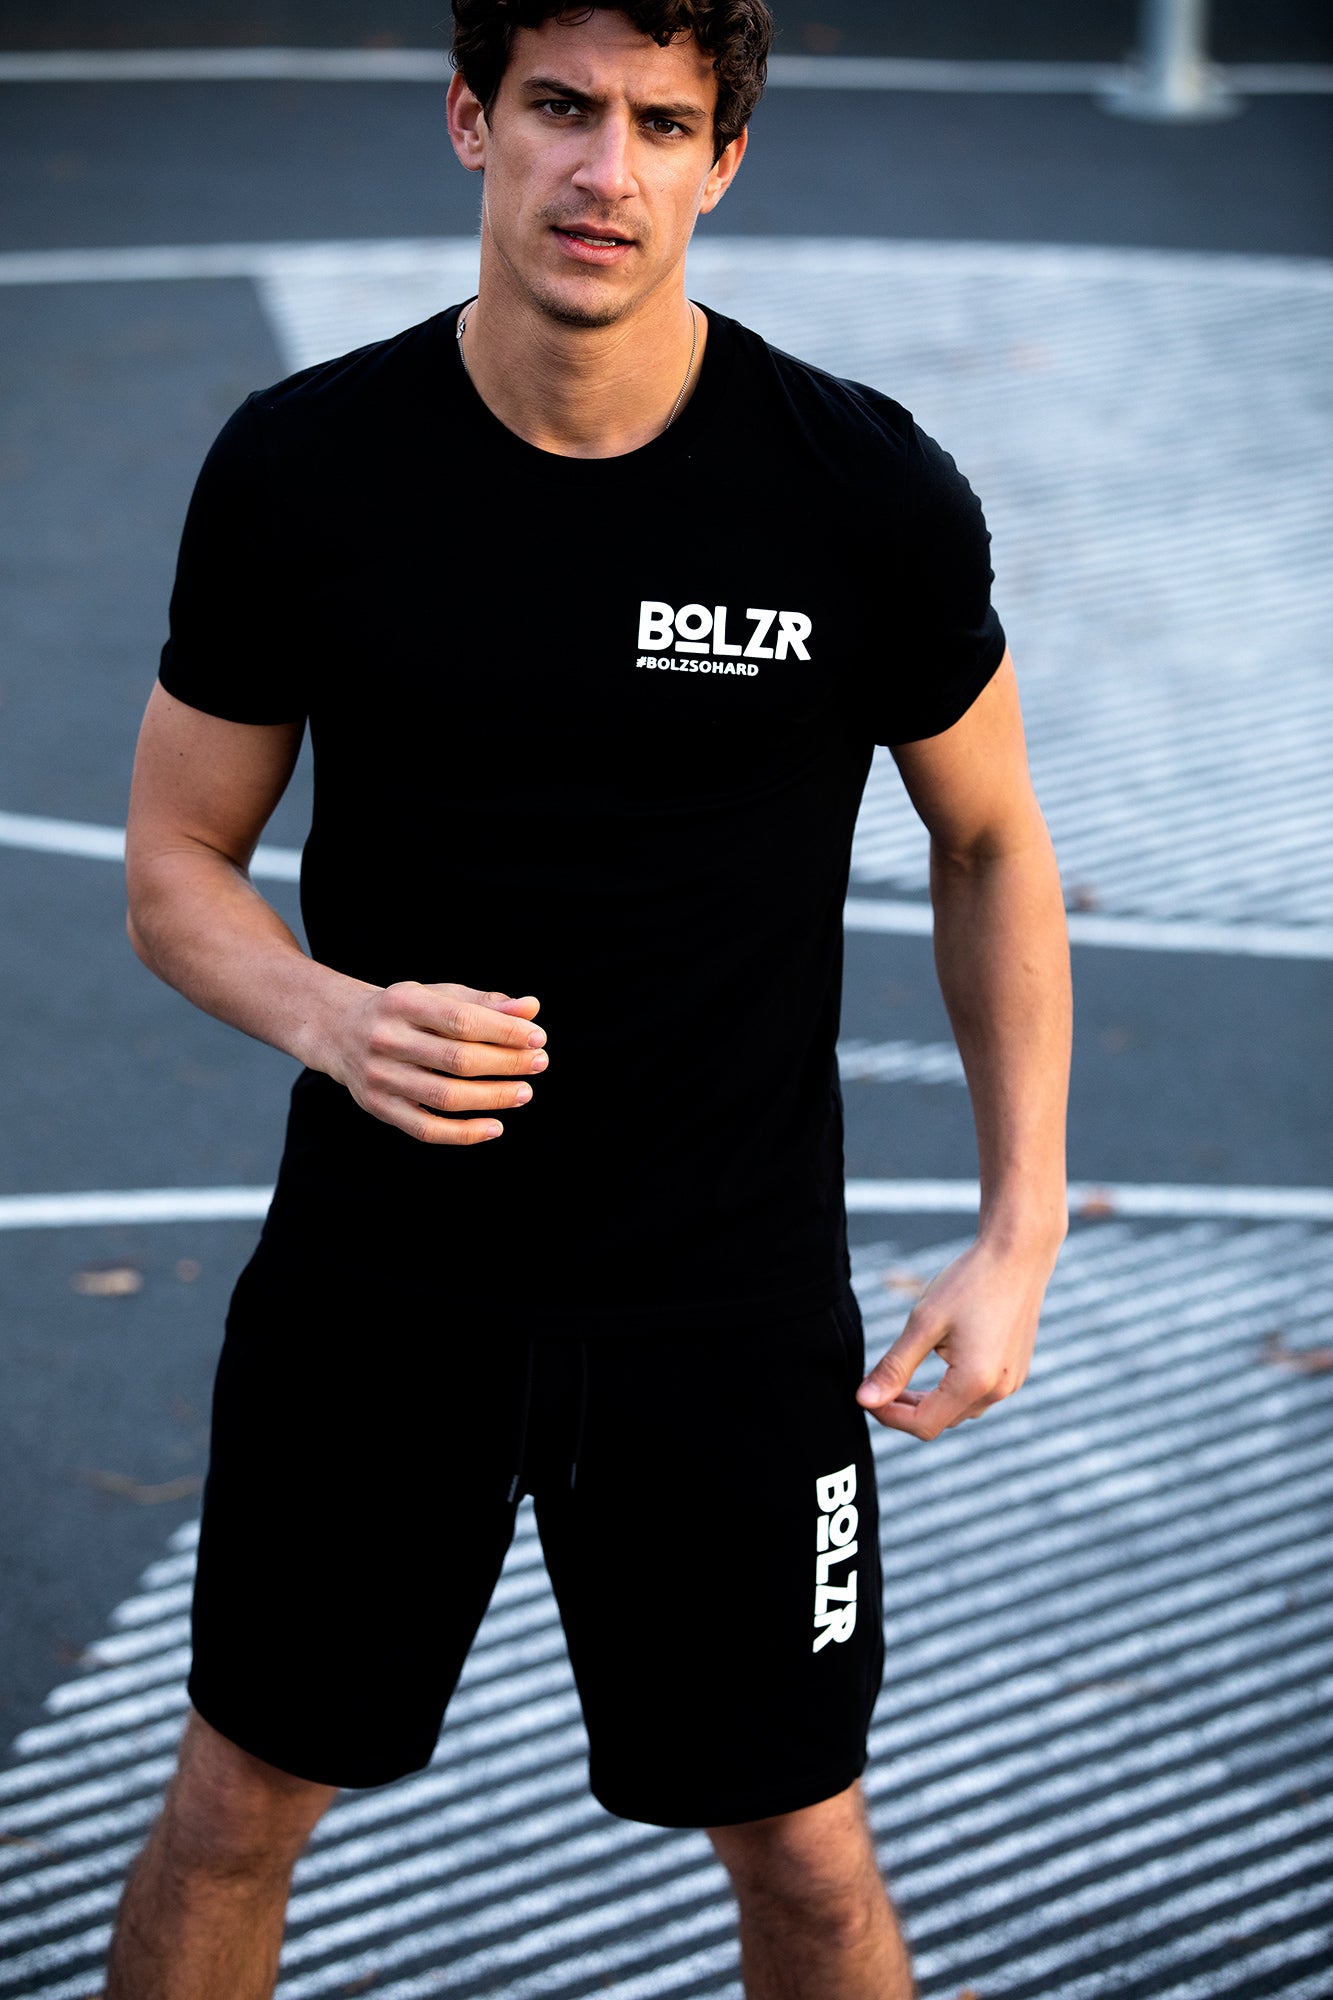 Bolzr T-Shirt | Schwarz - small #bolzsohard